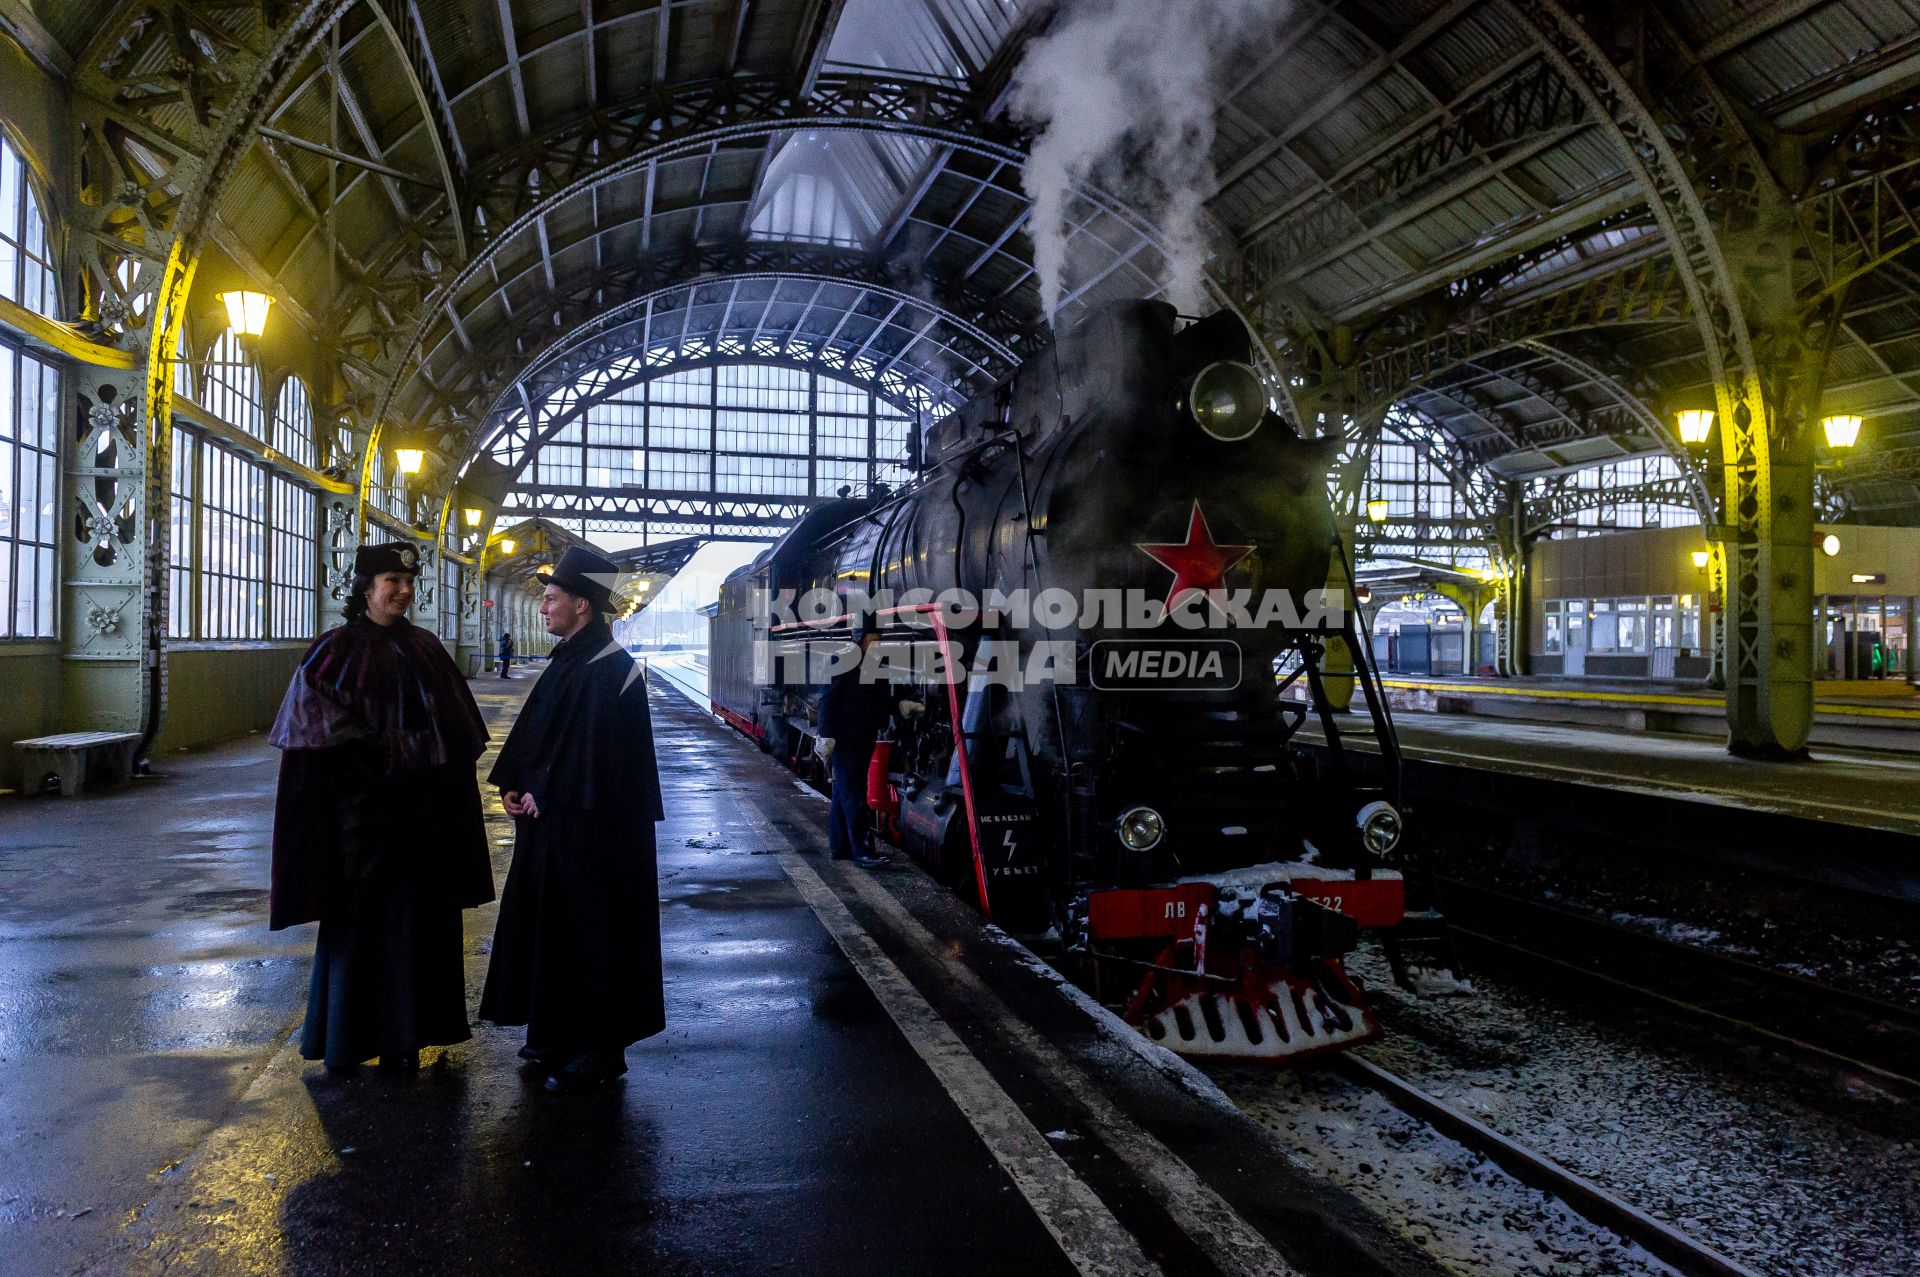 Санкт-Петербург. Исторический локомотив, участвовавший в съемках фильмов.